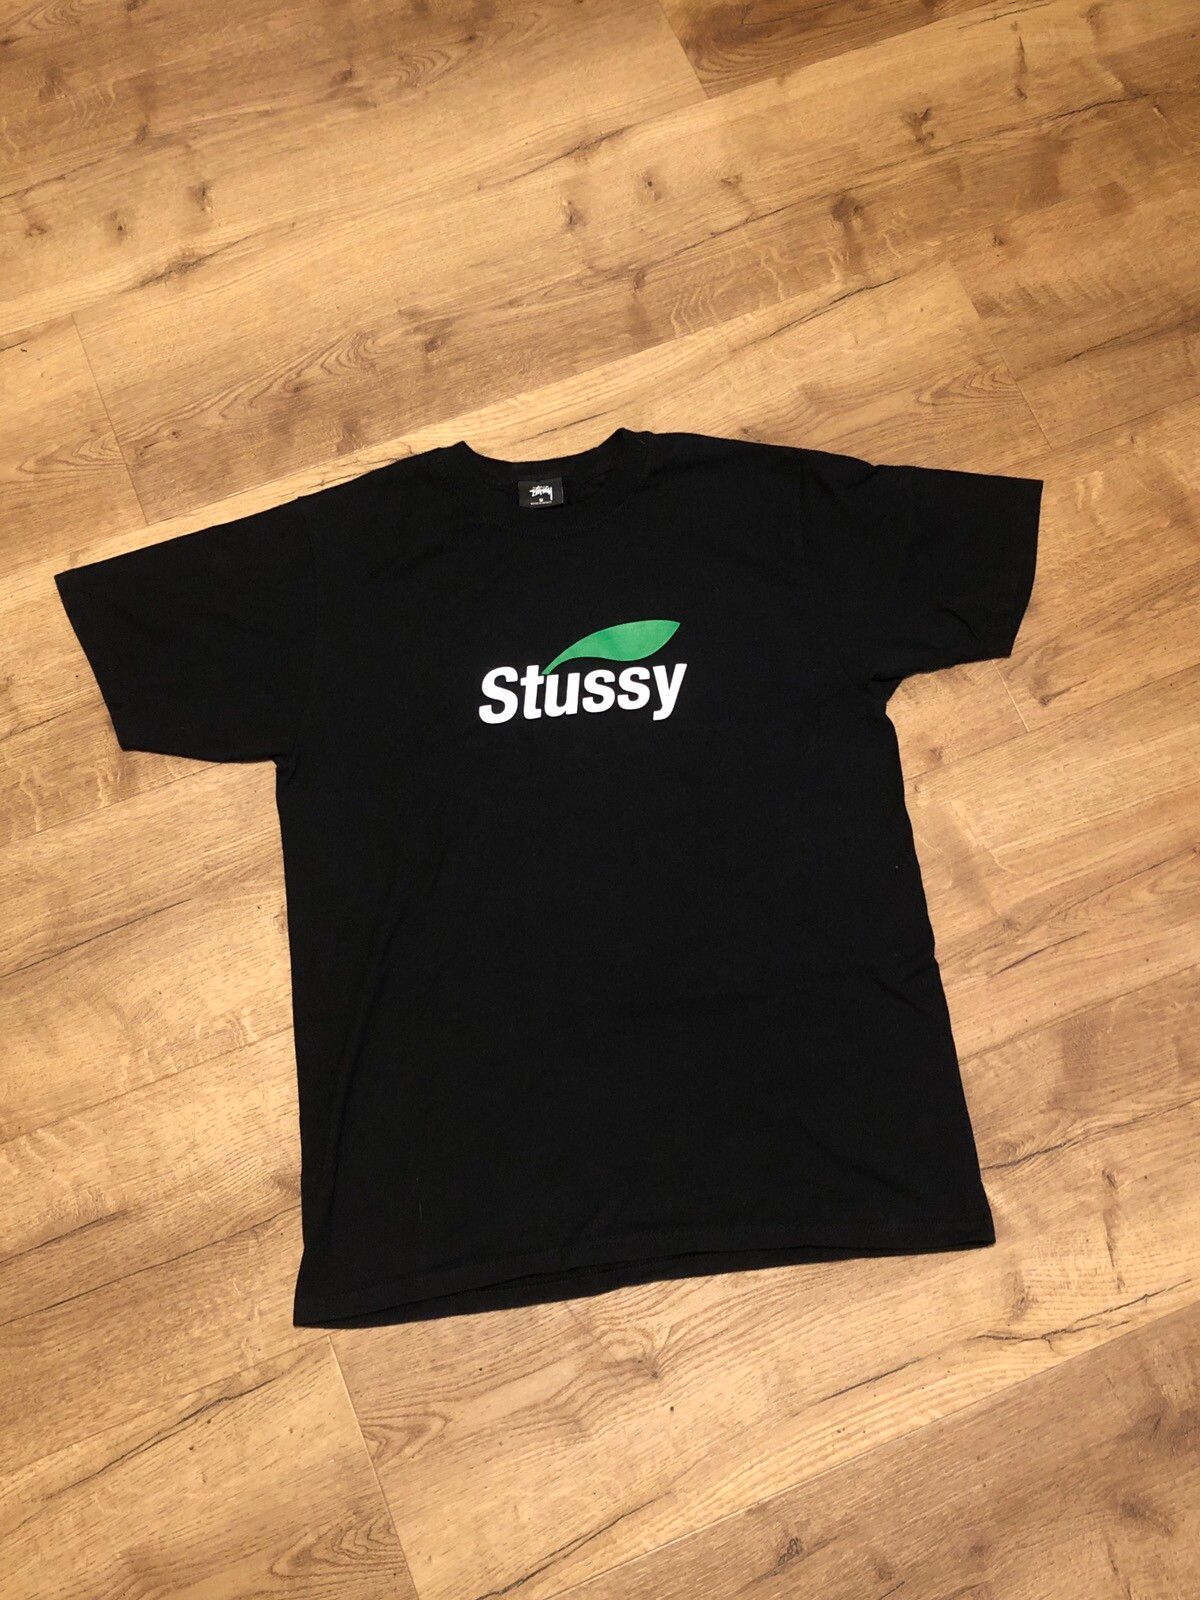 Stussy Stussy apple tee | Grailed